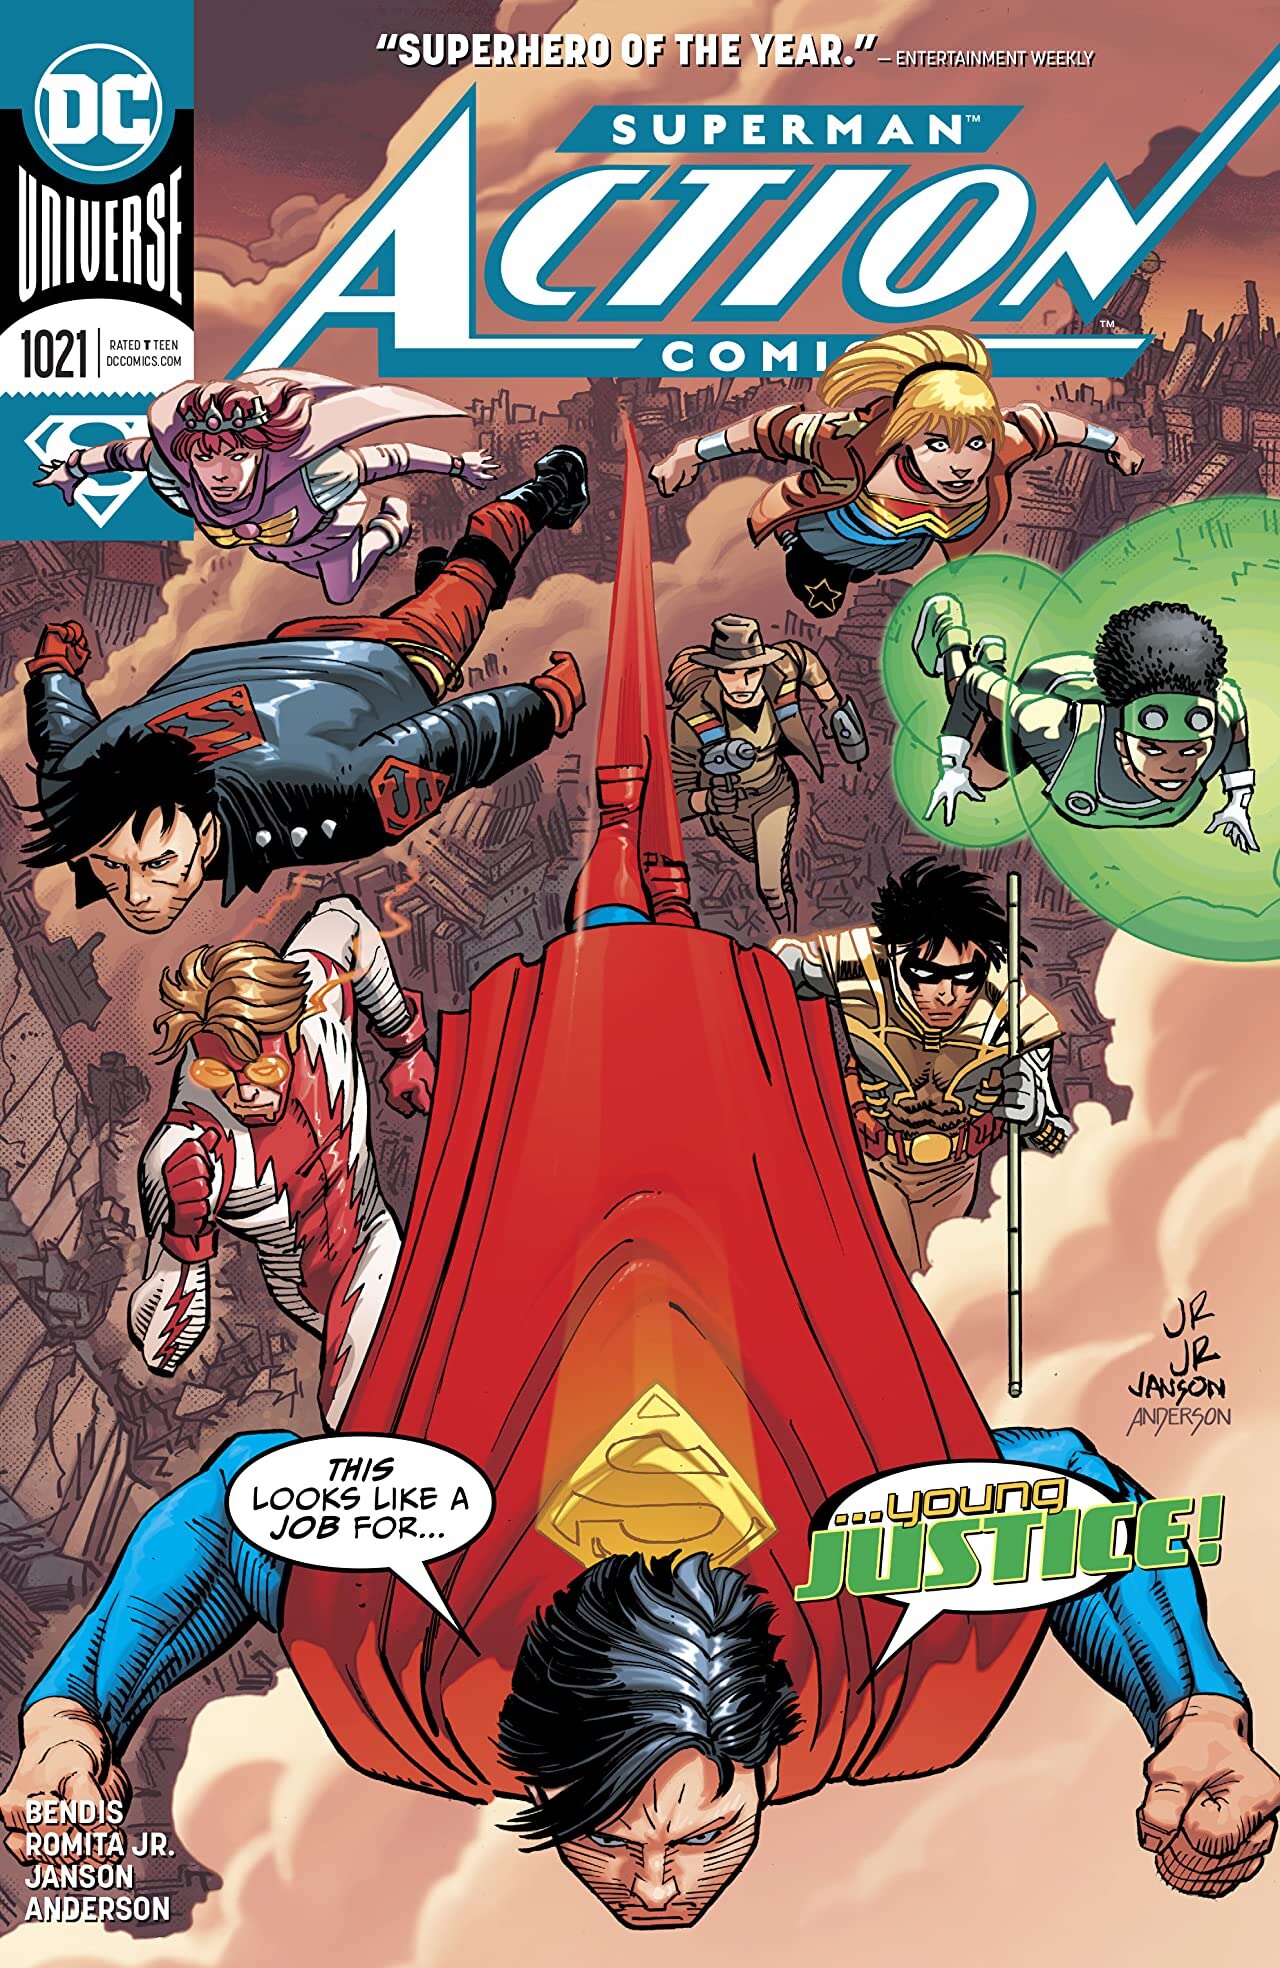 2020 Dc Comics First Print Romita Cover Action Comics #1019 